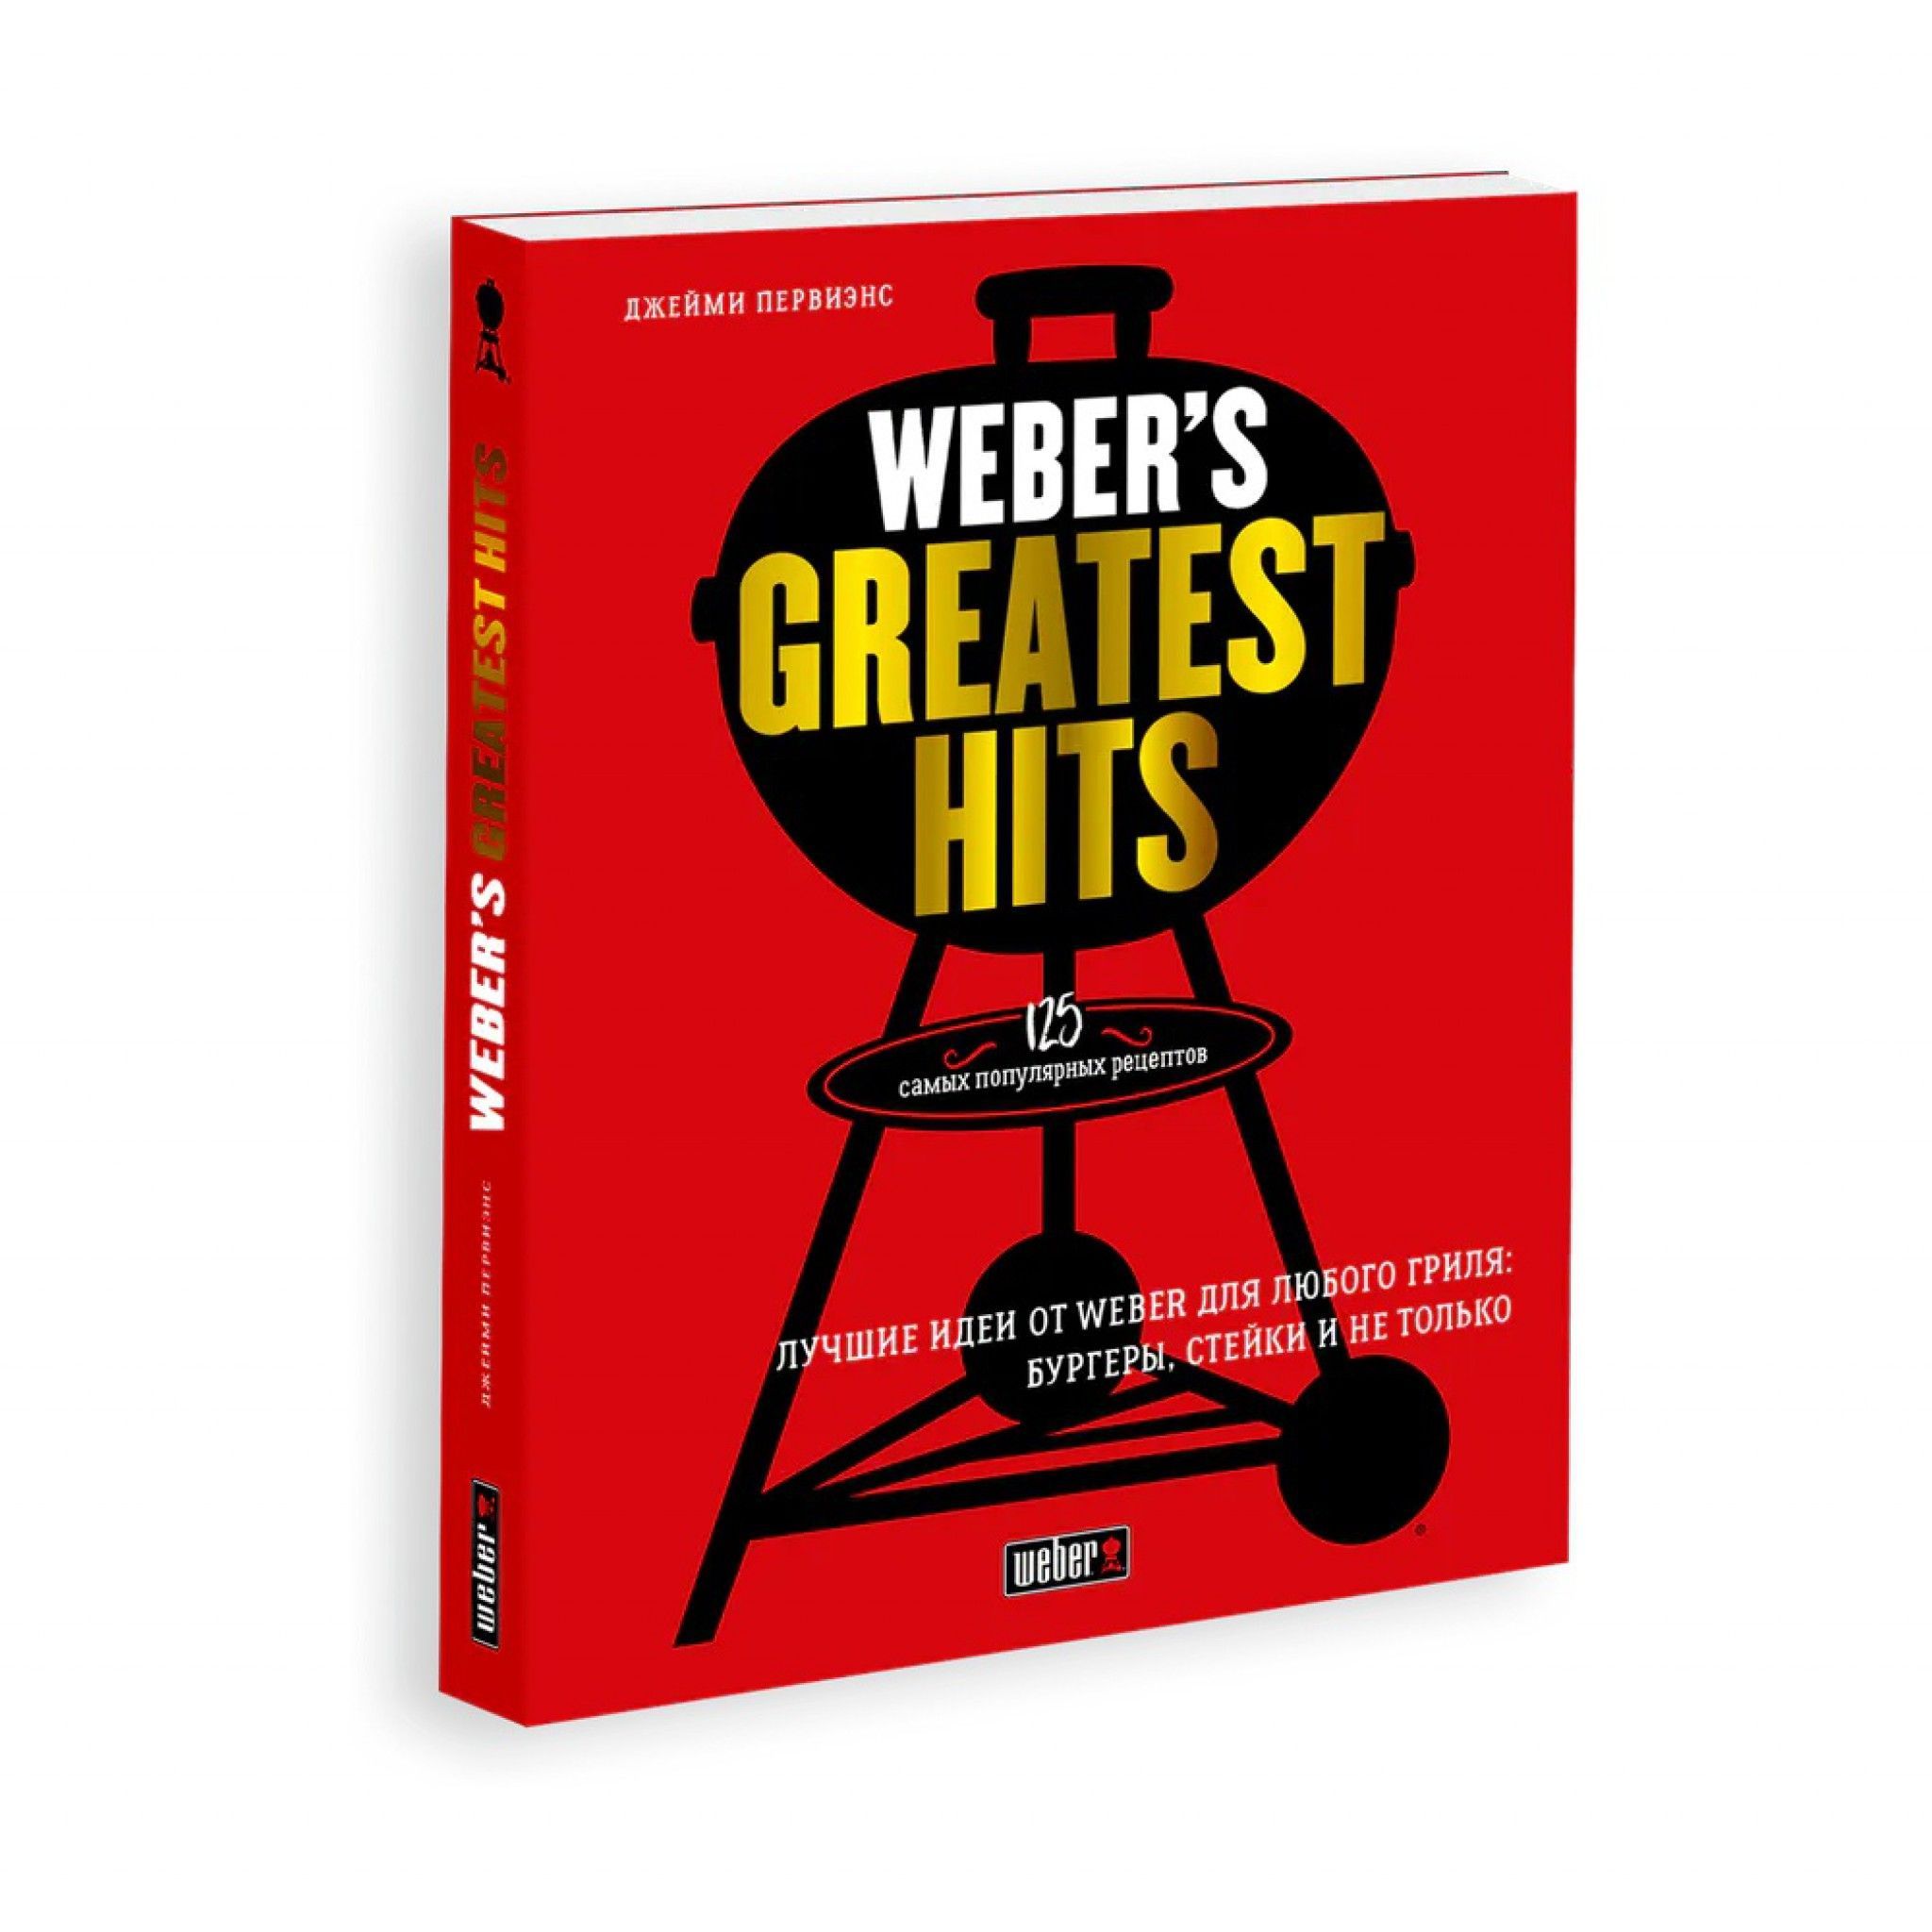 товар Книга "Weber’s Greatest Hits" 18078 Weber магазин Tehnorama (официальный дистрибьютор Weber в России)